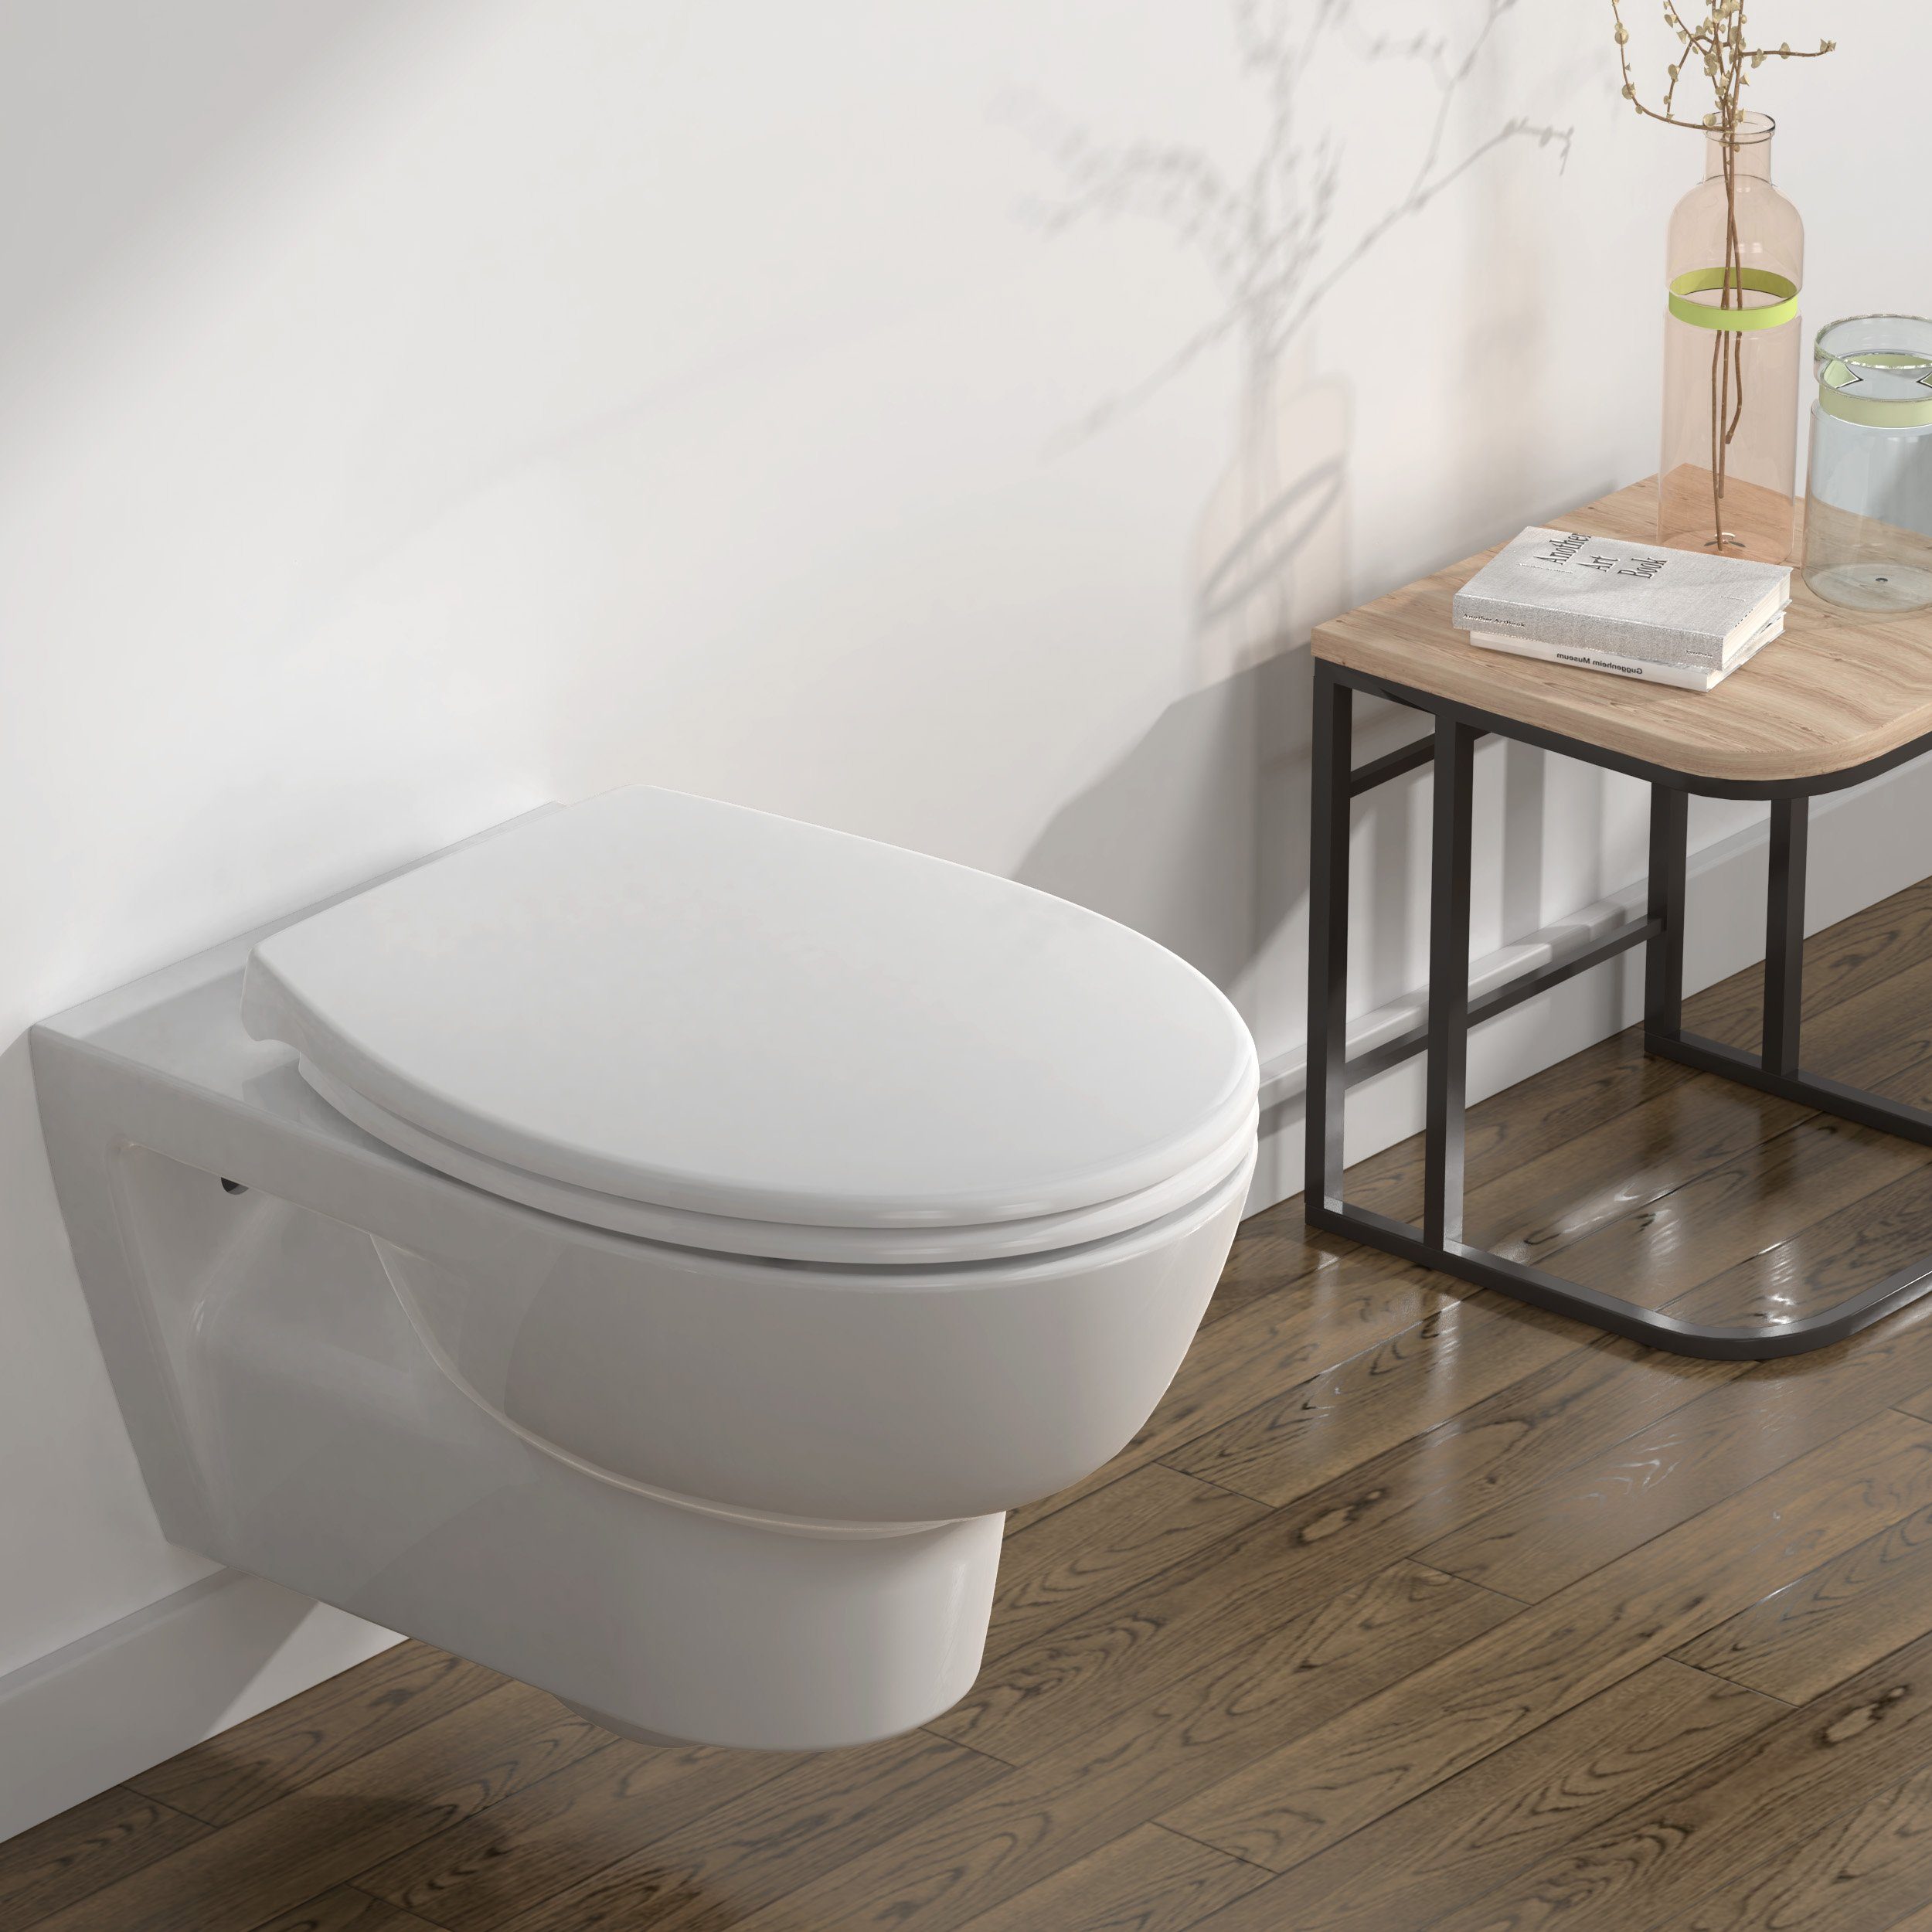 WC-Sitz Premium Toilettendeckel antibakteriell oval weiß. Klodeckel mit Quick-Release-Funktion und Softclose Absenkautomatik. Wc-sitz hochwertigen Duroplast und rostfreiem Edelstahl abnehmbar.